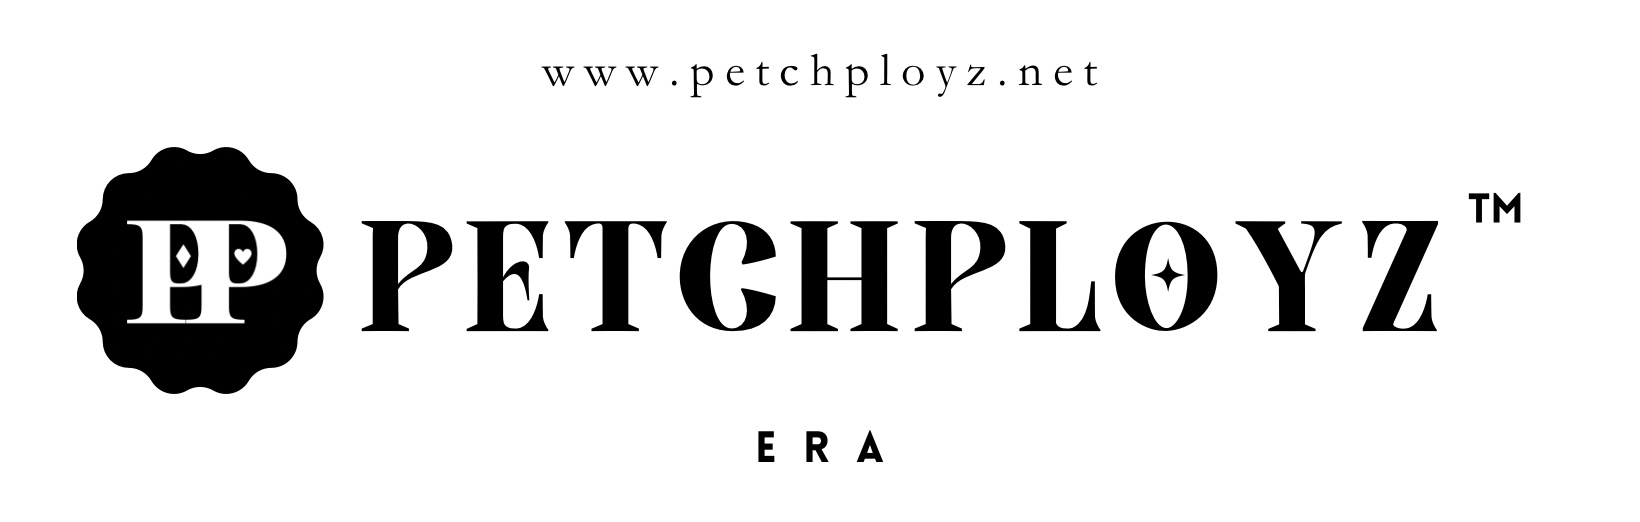 petchployz.net